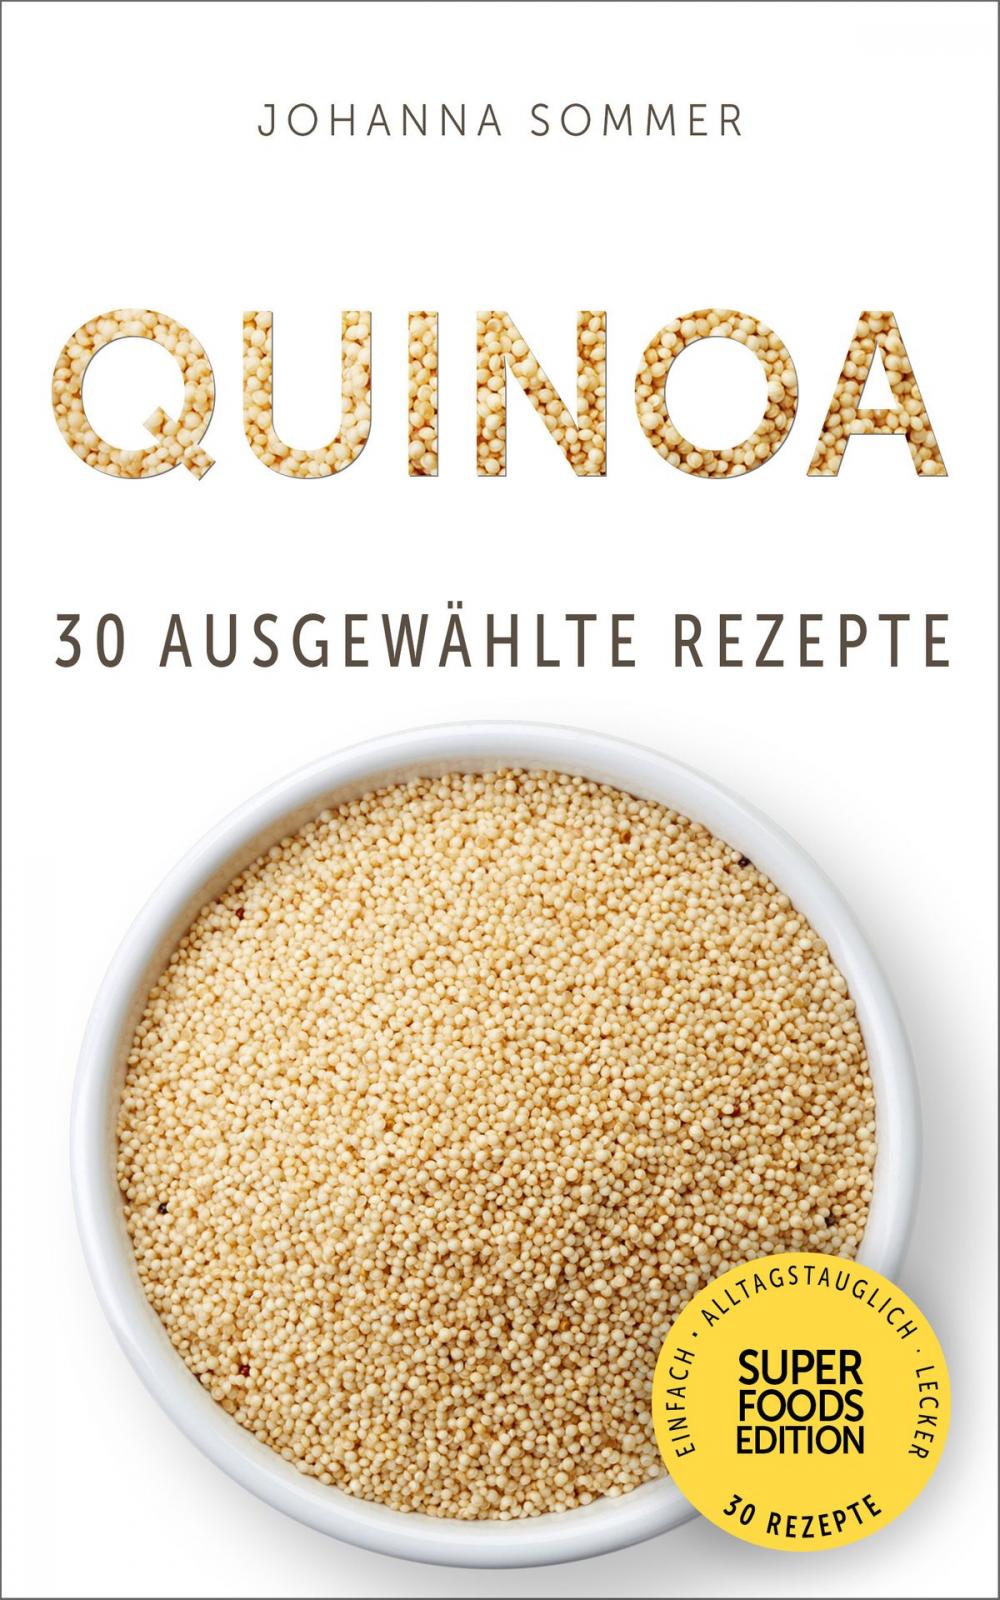 Big bigCover of Superfoods Edition - Quinoa: 30 ausgewählte Superfood Rezepte für jeden Tag und jede Küche